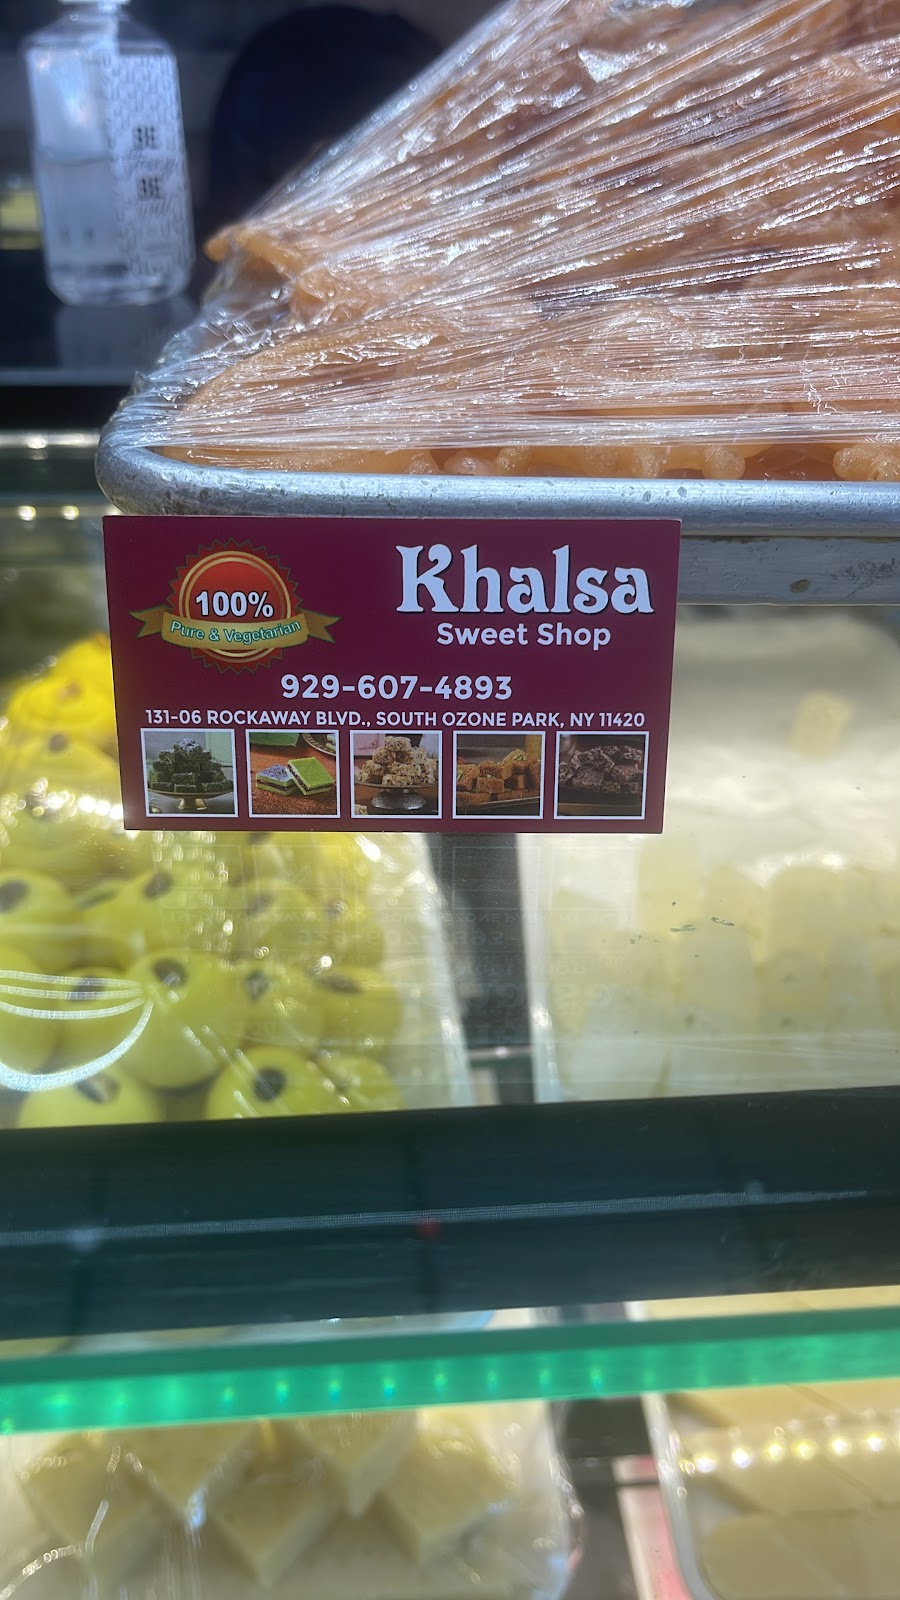 Khalsa sweet shop | 131-06 Rockaway Blvd, Queens, NY 11420 | Phone: (929) 607-4893